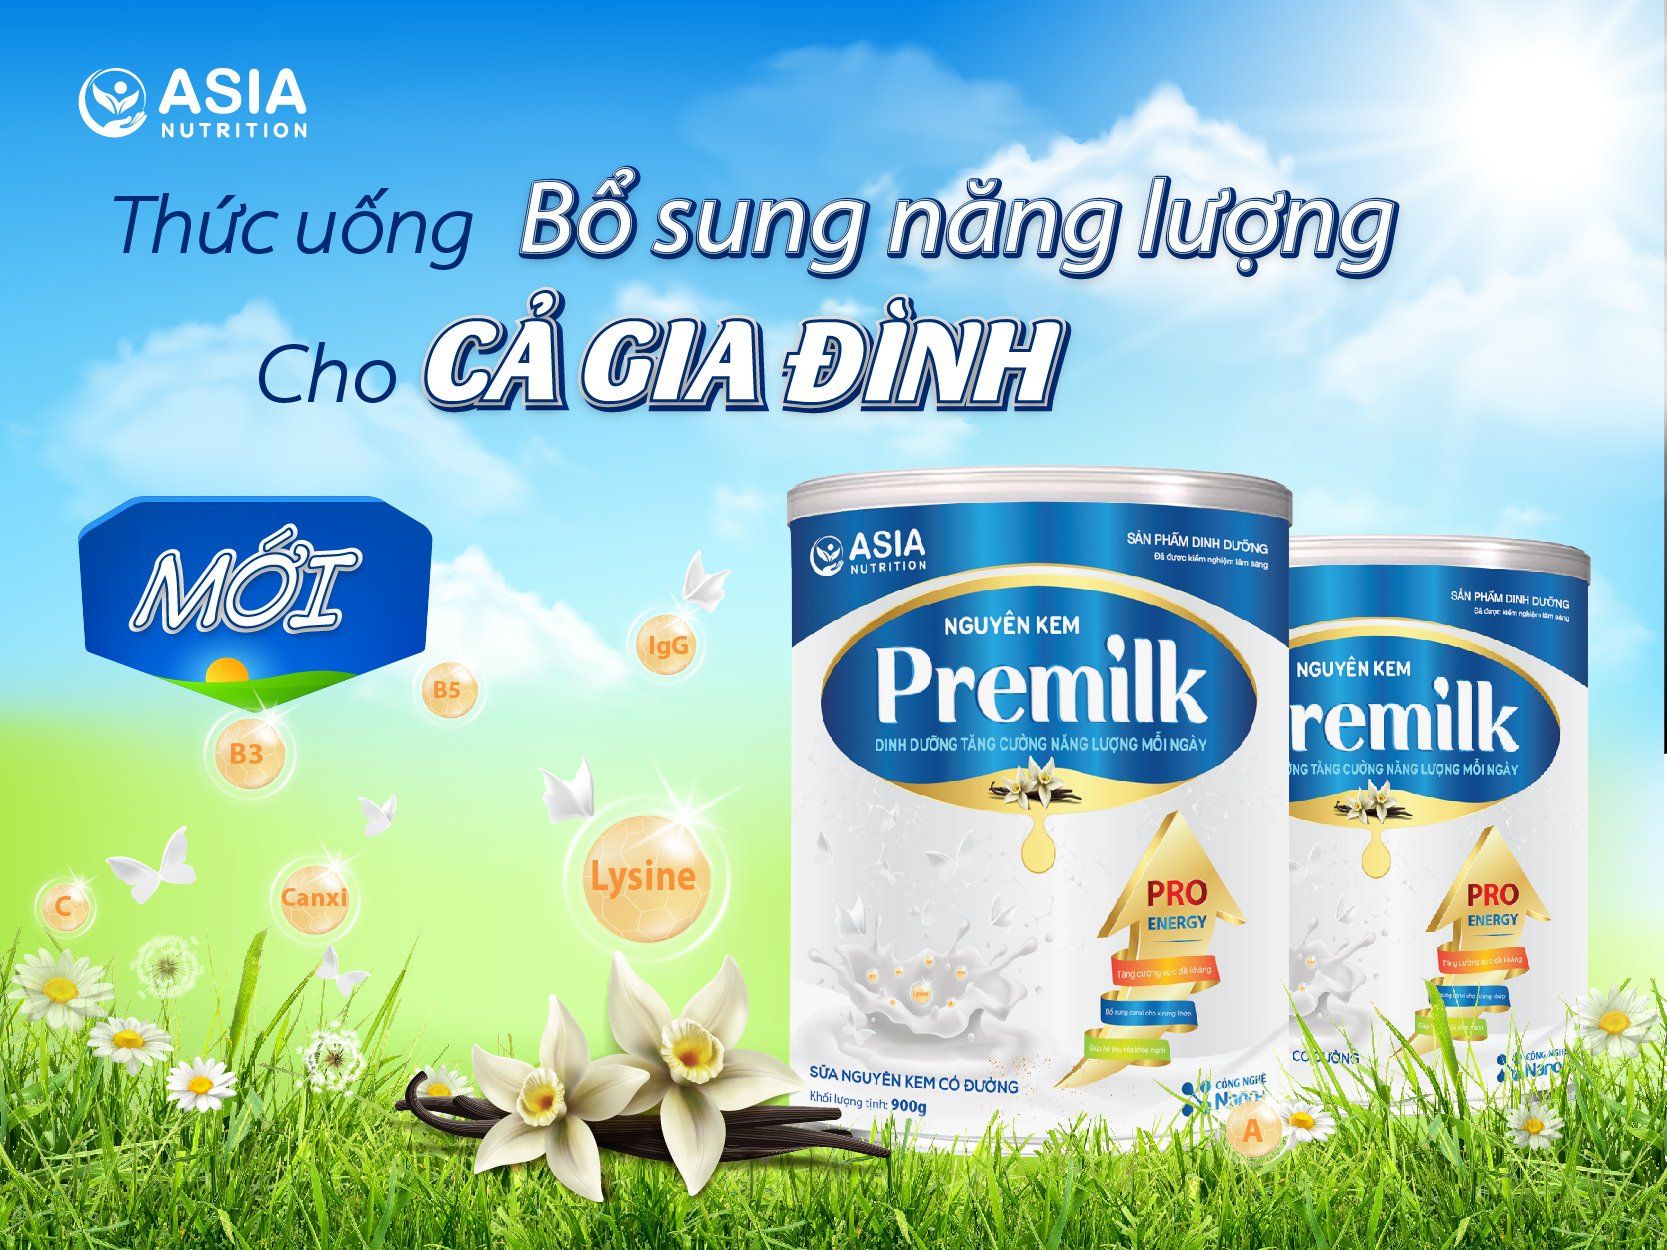 Sữa bột nguyên kem Premilk Asia 900g Nutrition tác dụng phục hồi sức khỏe, tăng cân an toàn